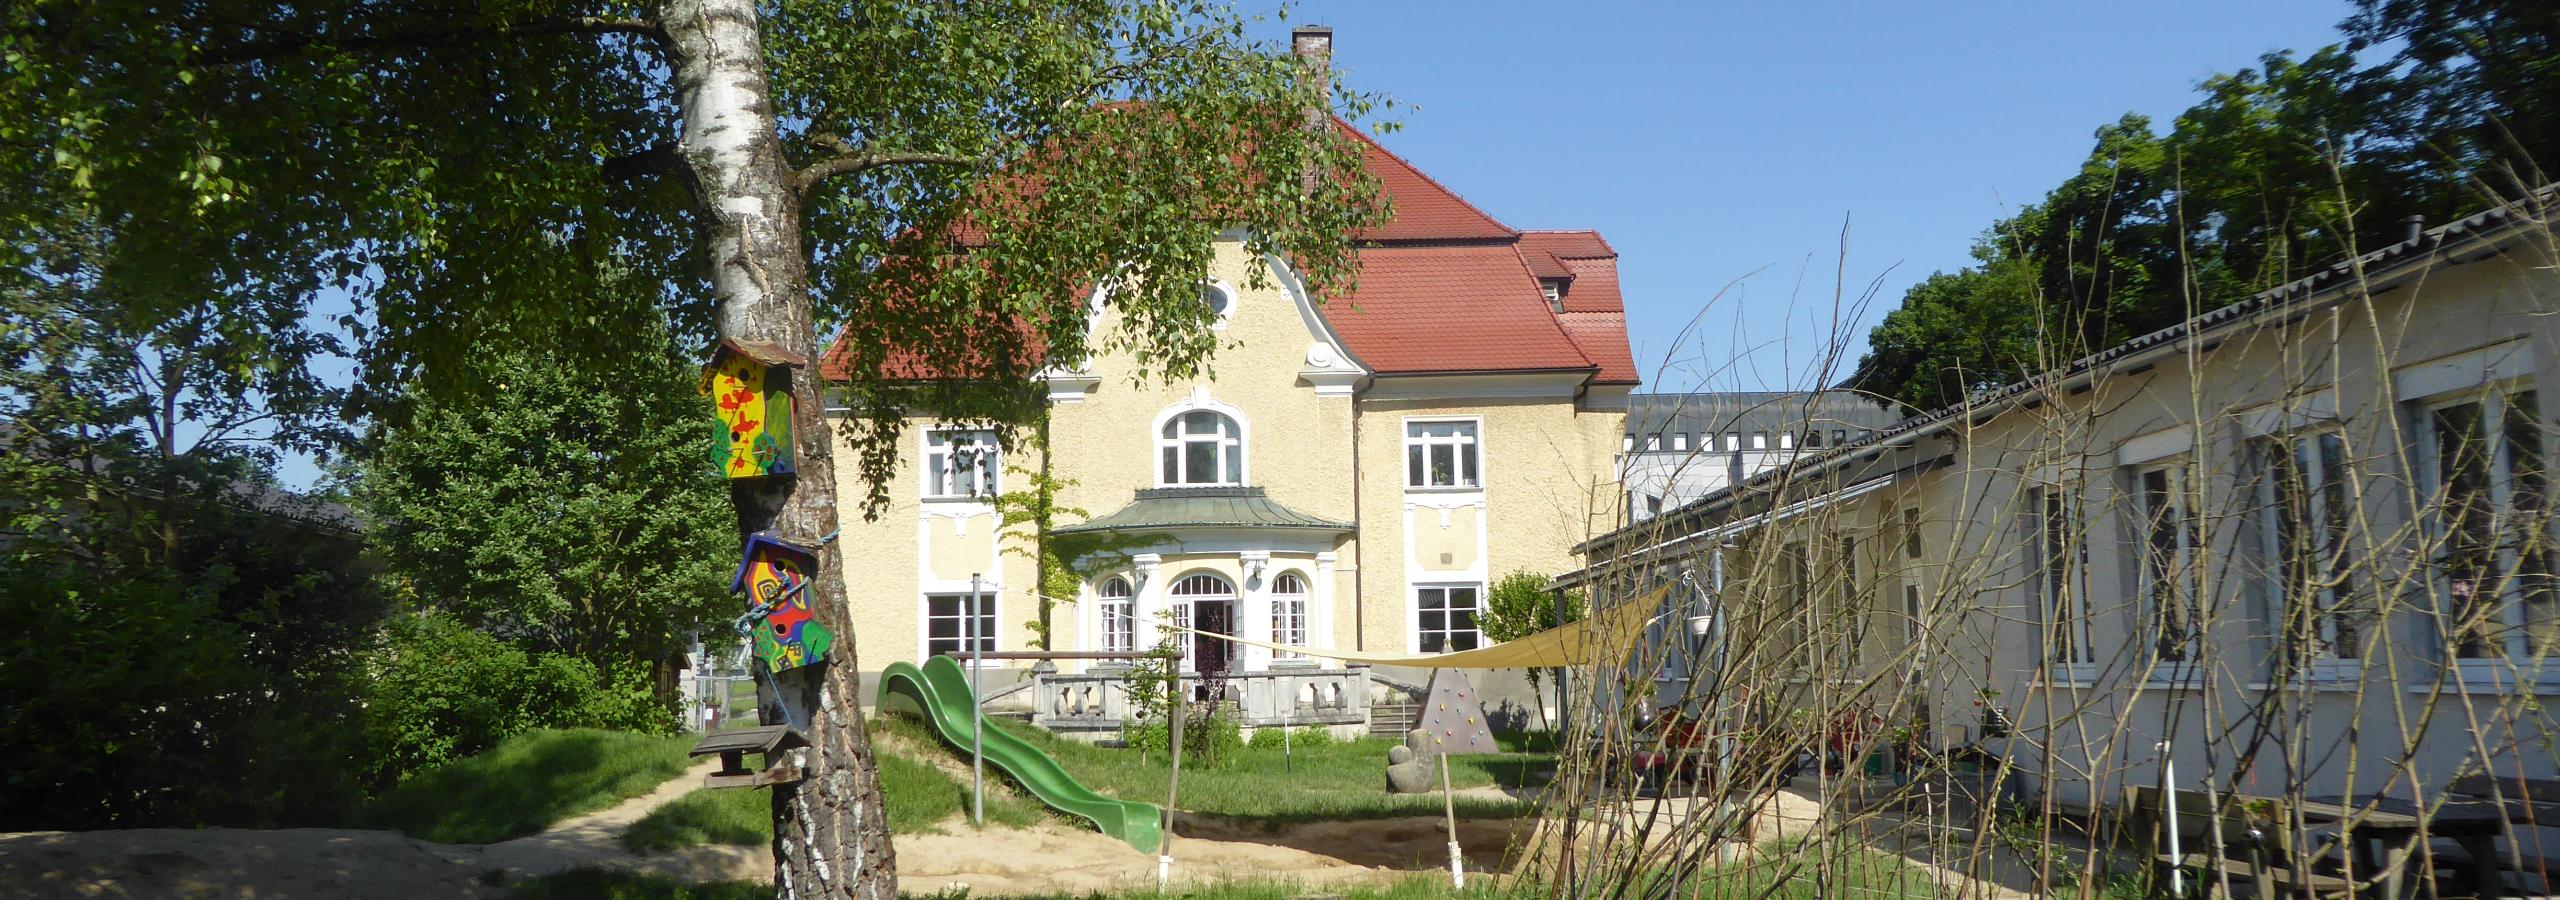 Villa als Schulhaus